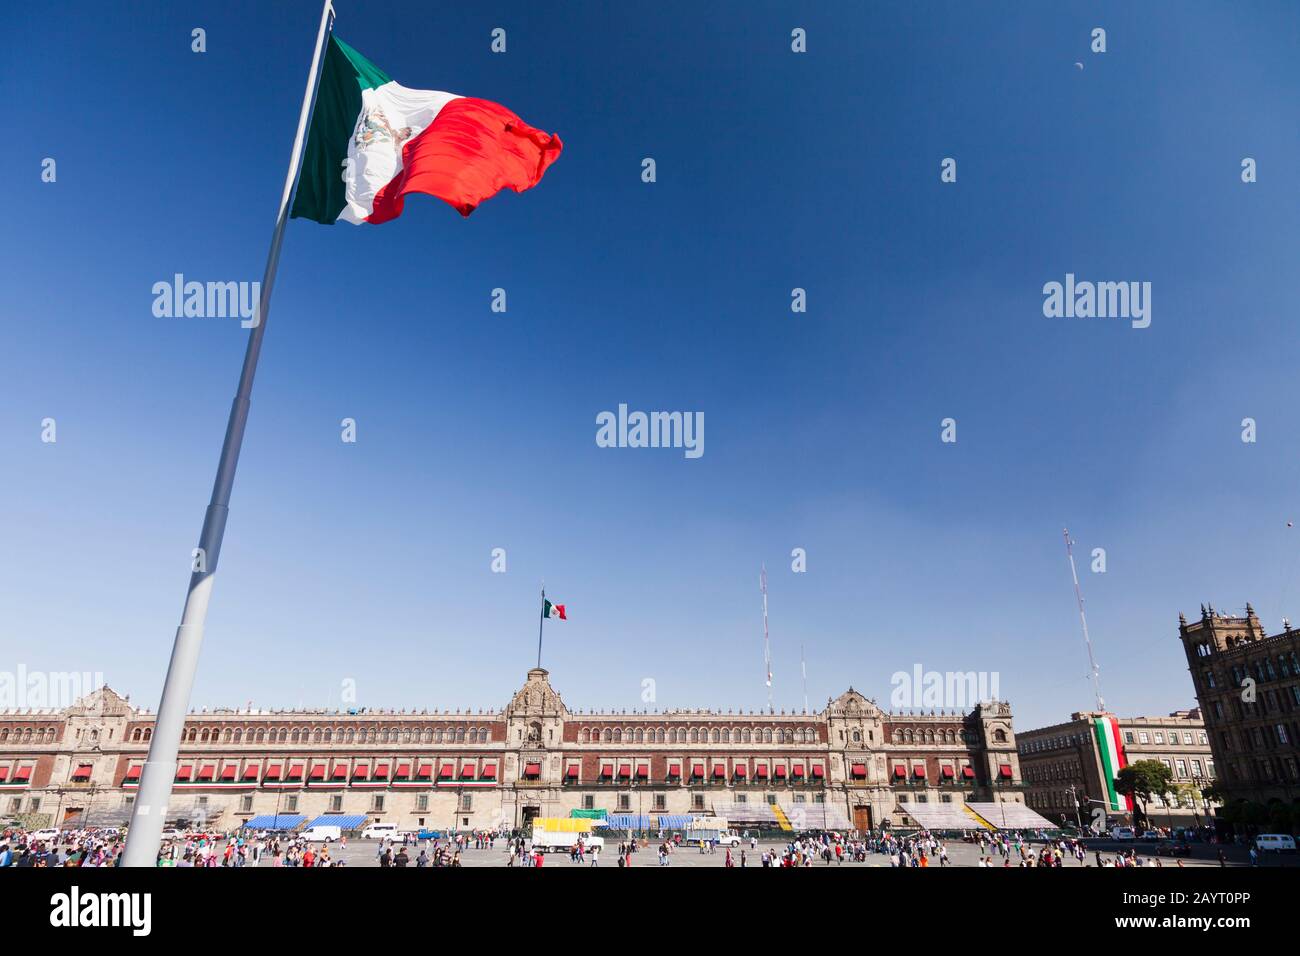 Bandiera nazionale e Palazzo Nazionale, Zocalo, Plaza de la Constitucion, Città del Messico, Messico, America Centrale Foto Stock